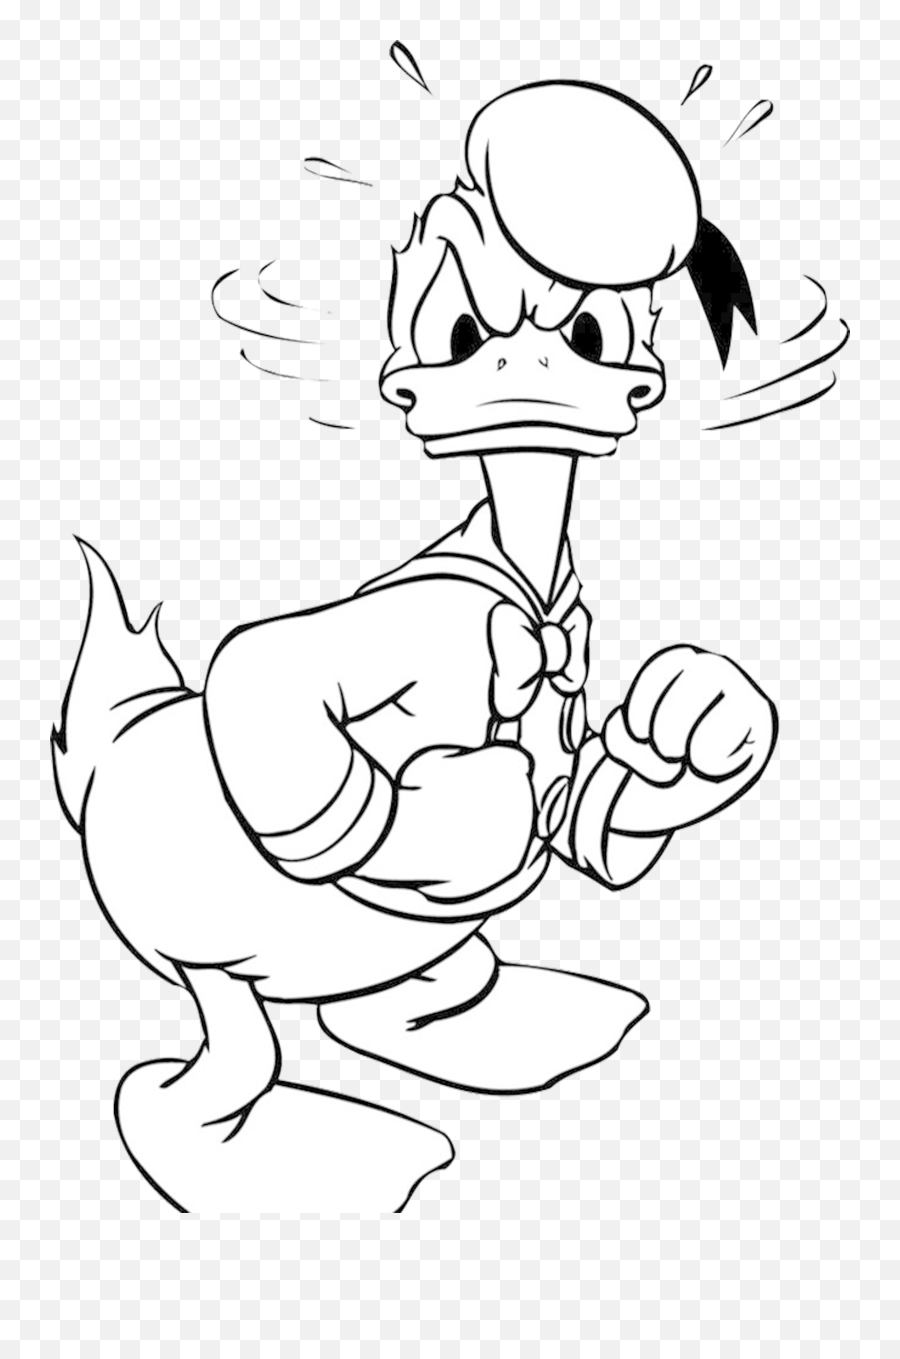 Donald Duck Png Images Cartoon Cartoons 20png Snipstock - Donald Duck Coloring Pages,Donald Duck Png